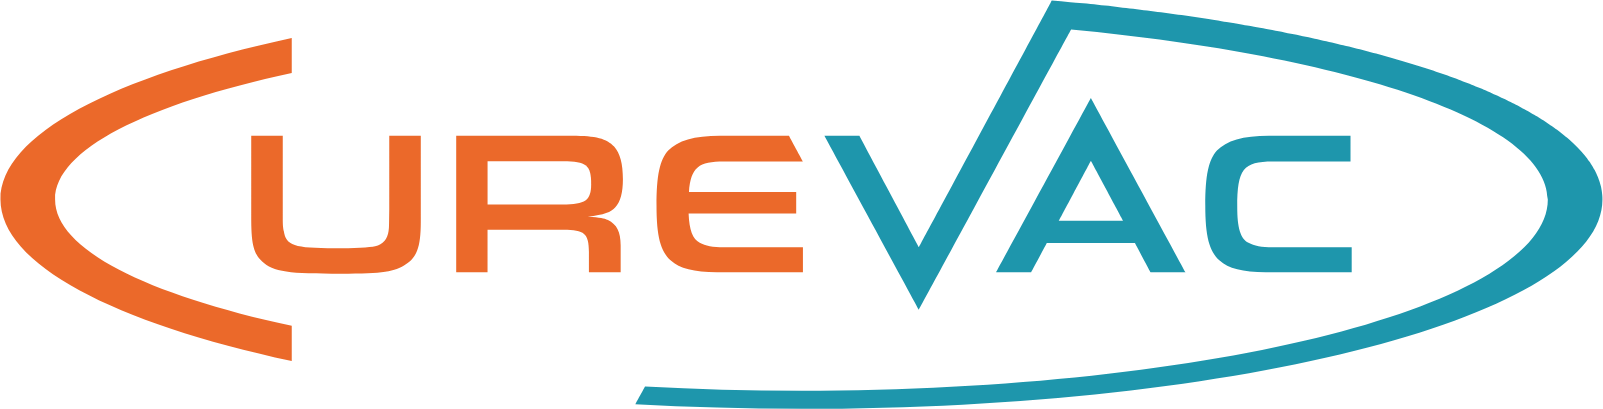 Curevac logo (transparent PNG)